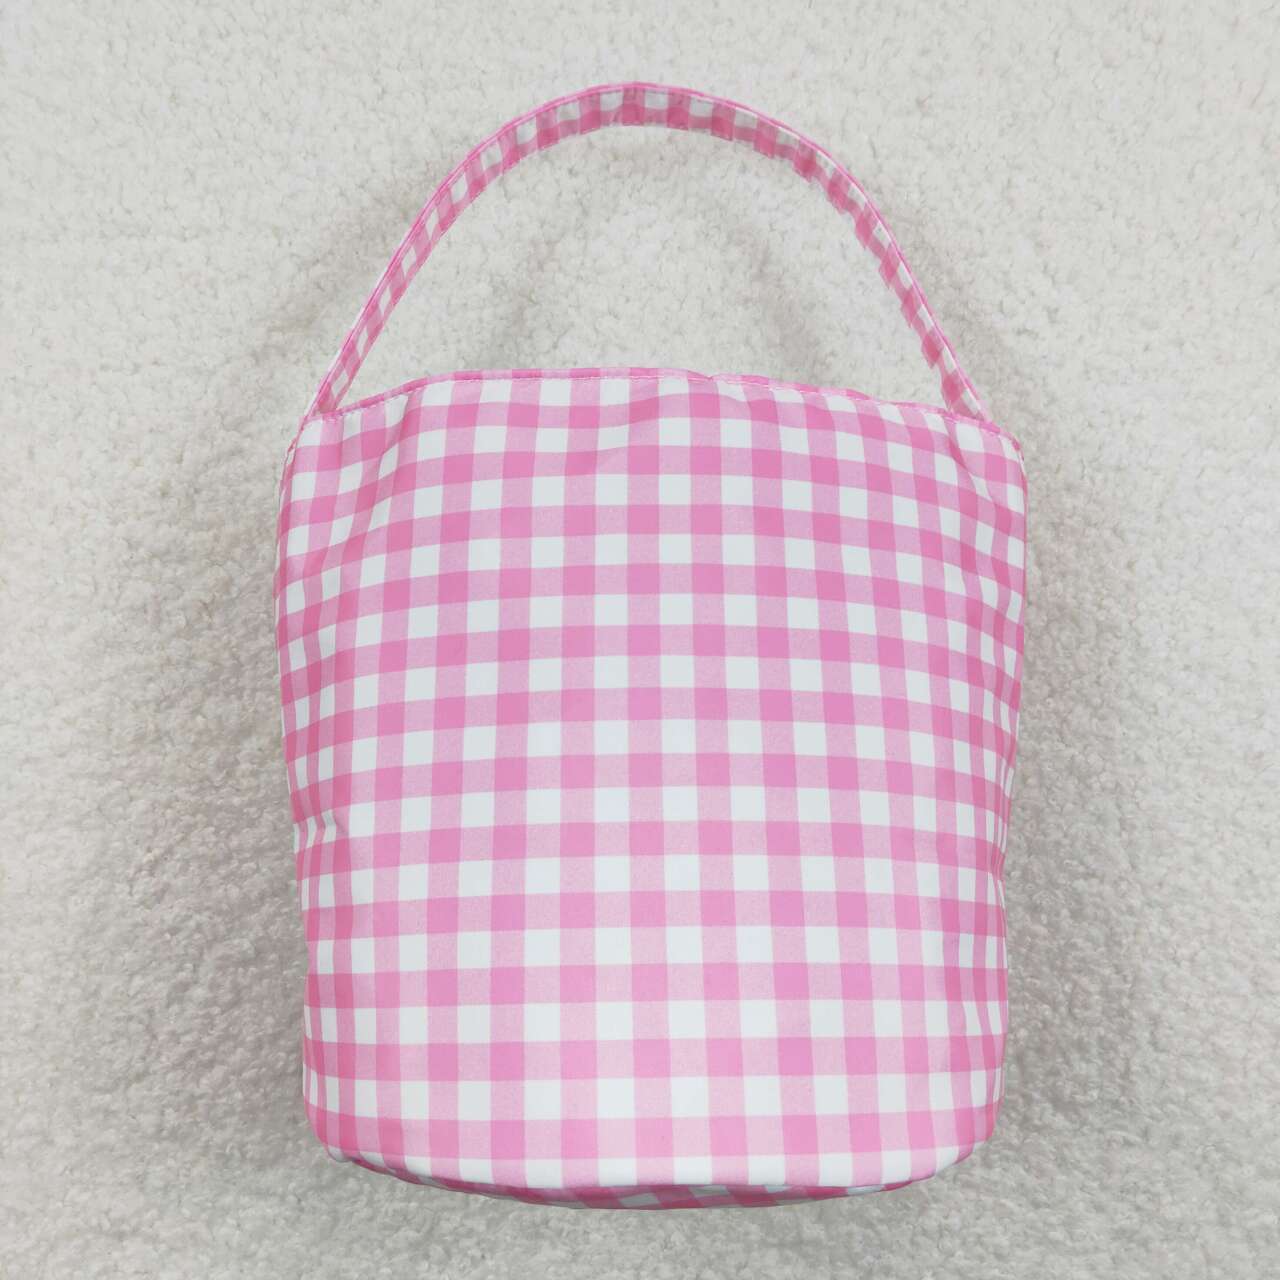 BA0160  Pink Plaid Colorful Bunny Easter Bag